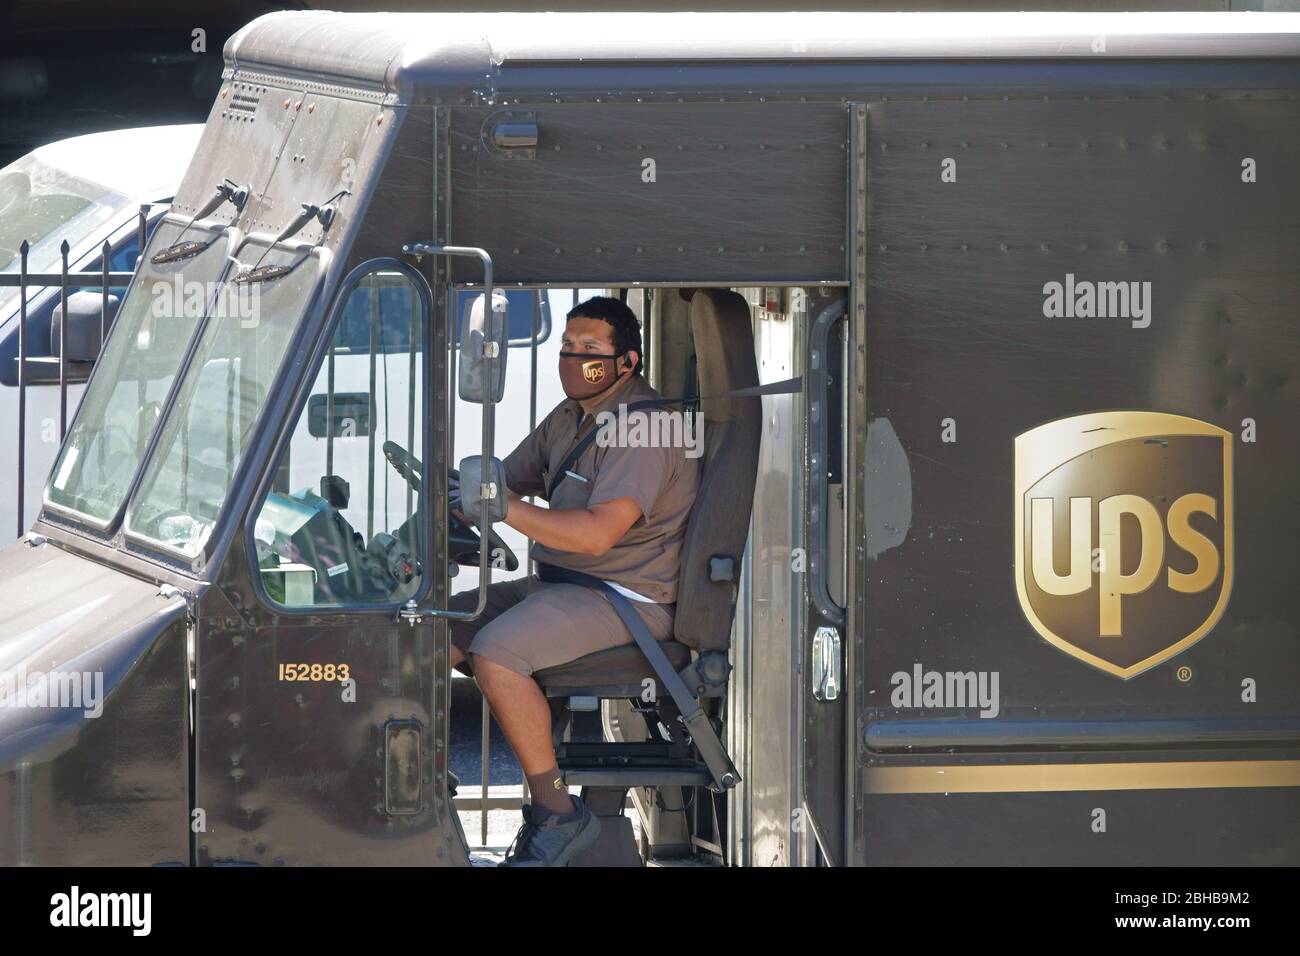 Los Angeles, CA / USA - 24. April 2020: Ein Fahrer für den United Parcel Service UPS trägt eine Firmenlogo-Maske, während er einen Lieferwagen parkt Stockfoto